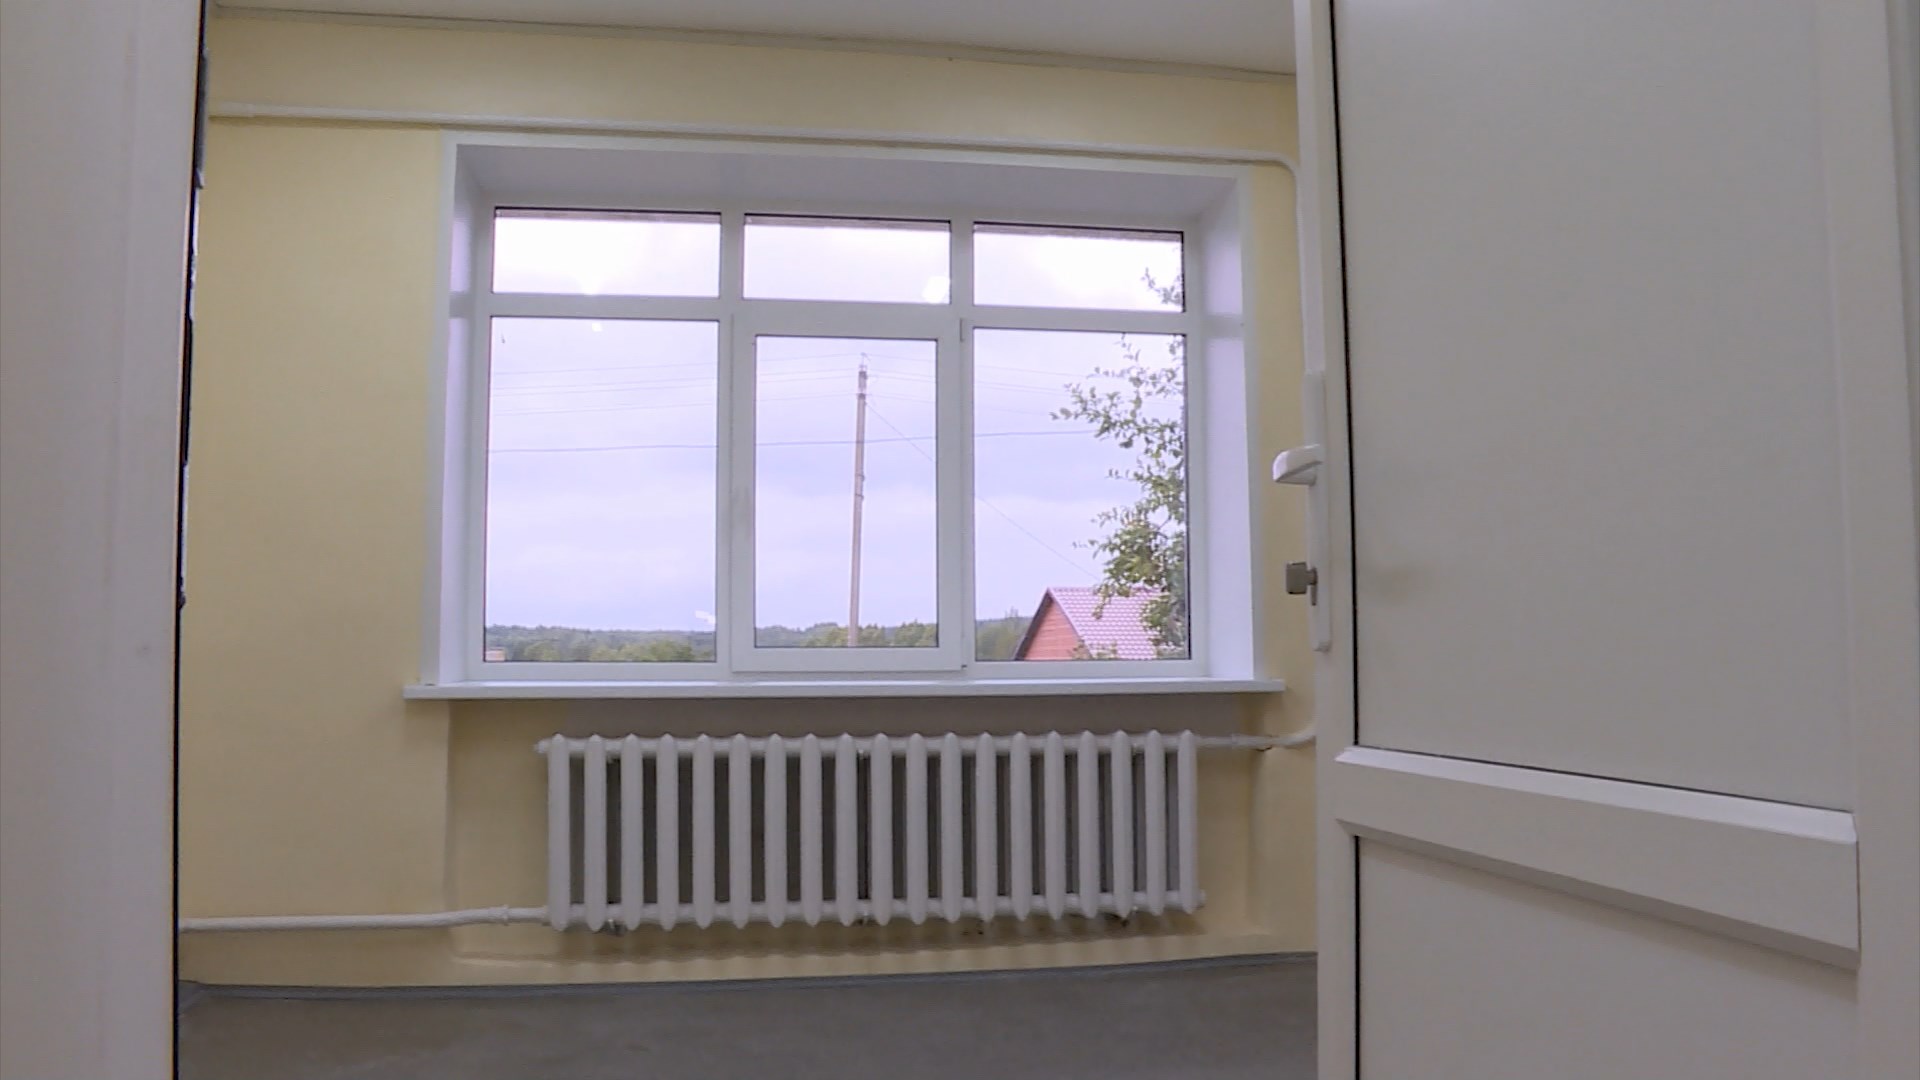 Благодаря федеральным средствам в кологривском Доме культуры появились новые окна